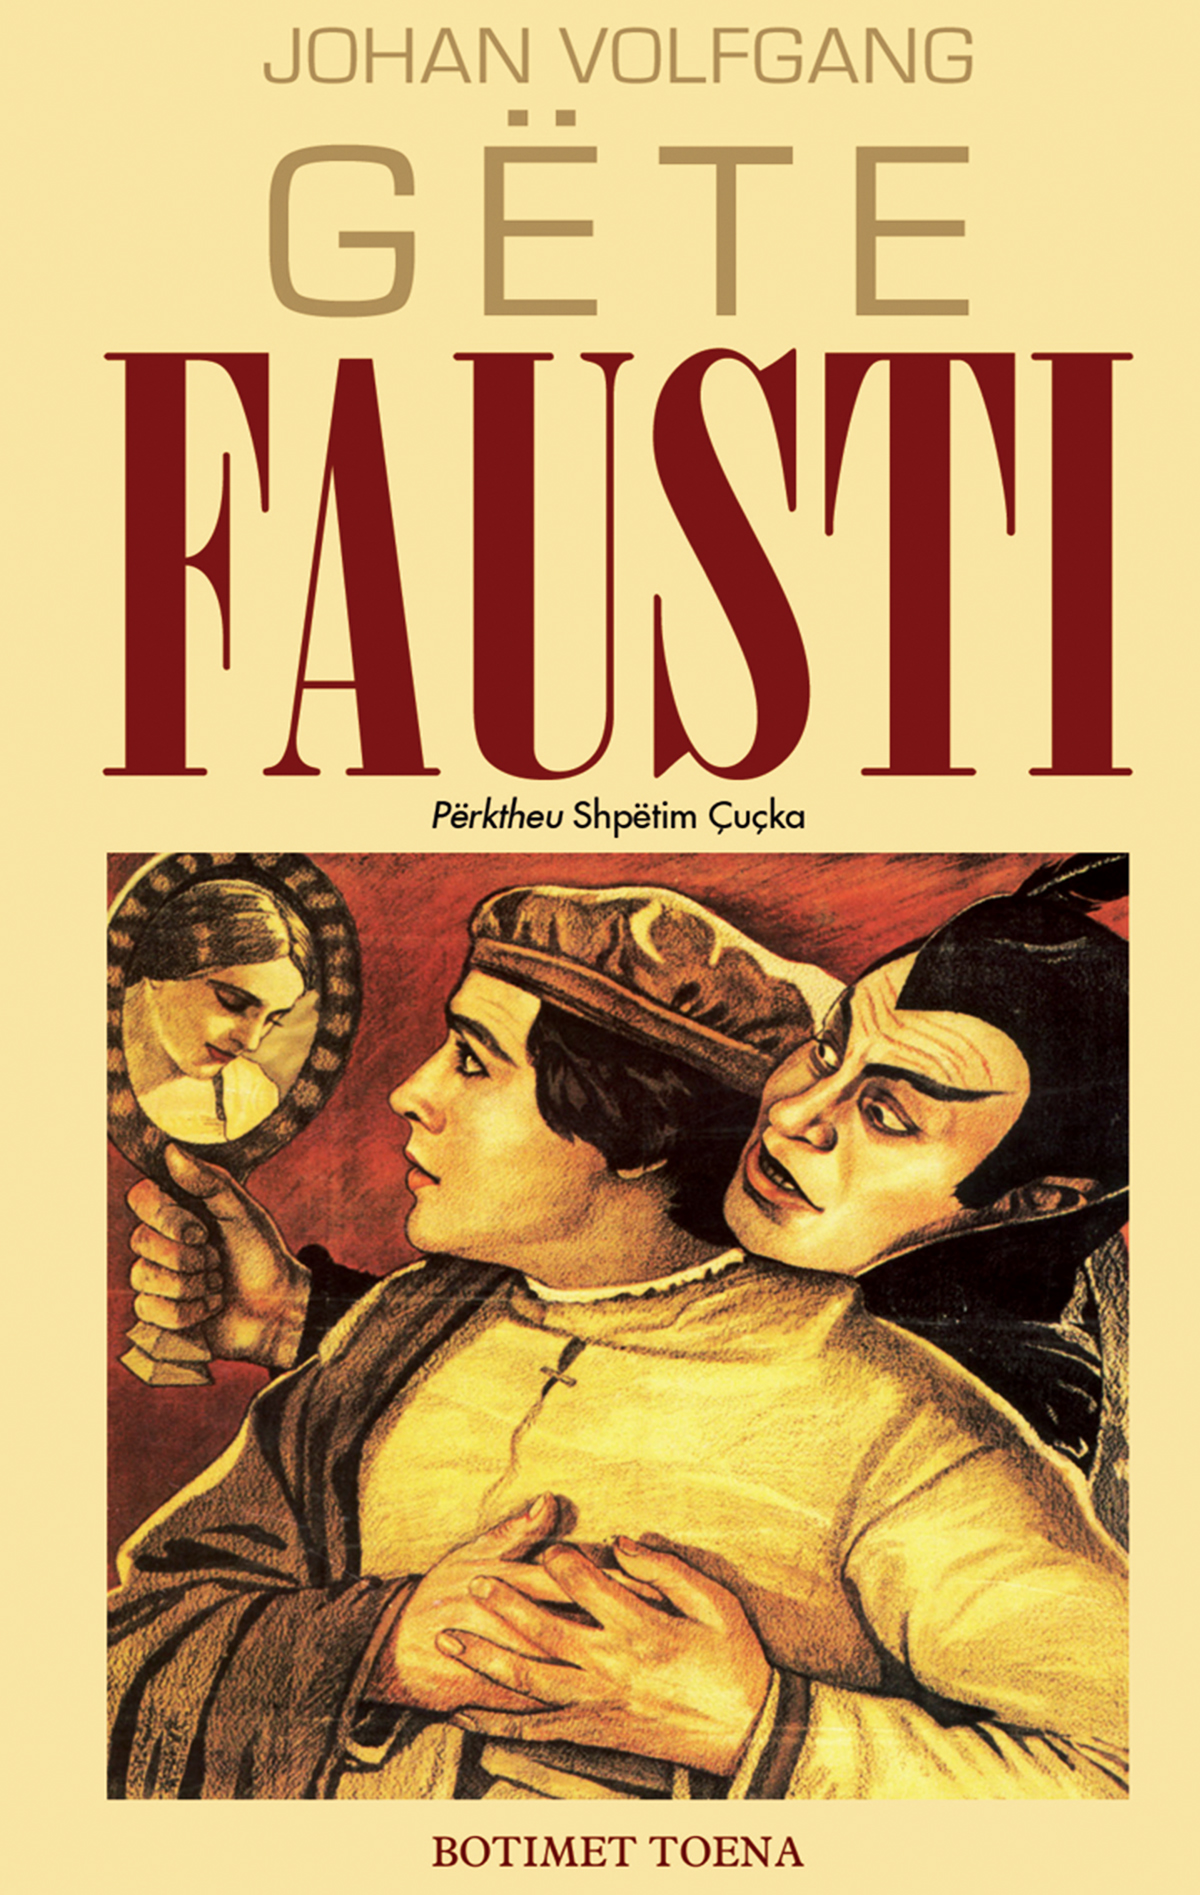 Fausti